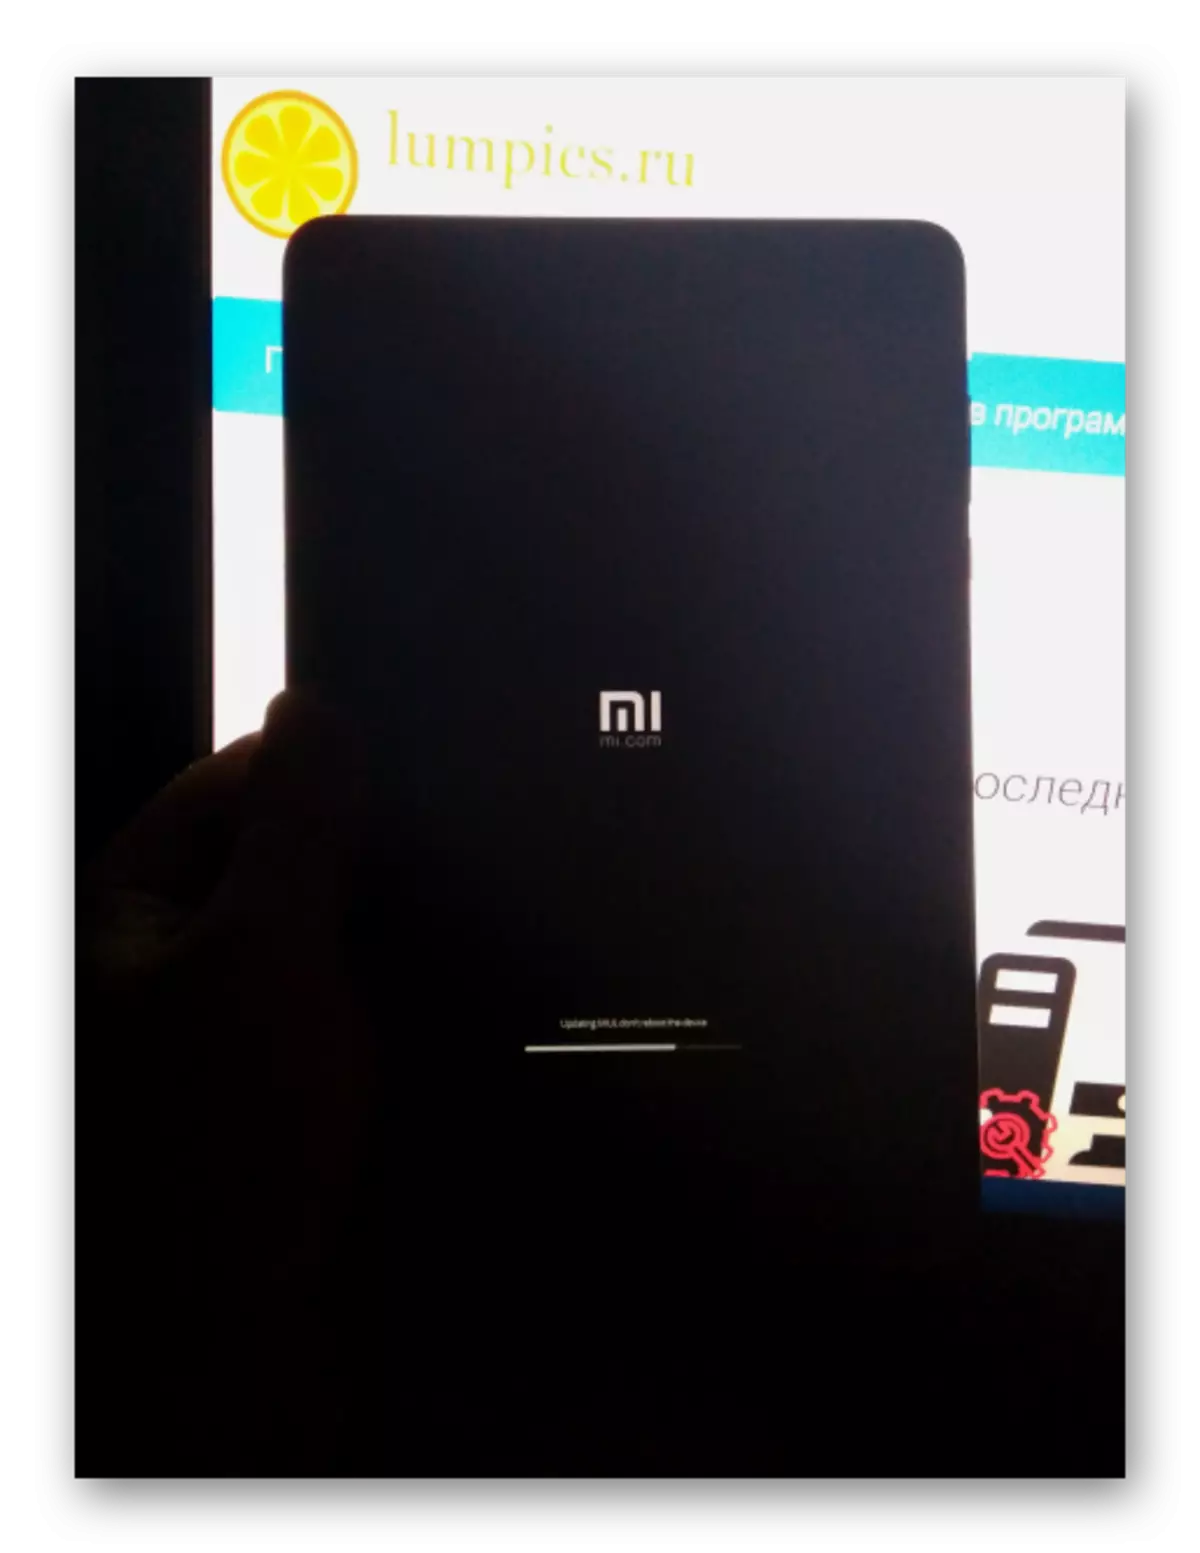 Xiaomi MiPad 2 прагрэс ўстаноўкі прашыўкі на экране девайса